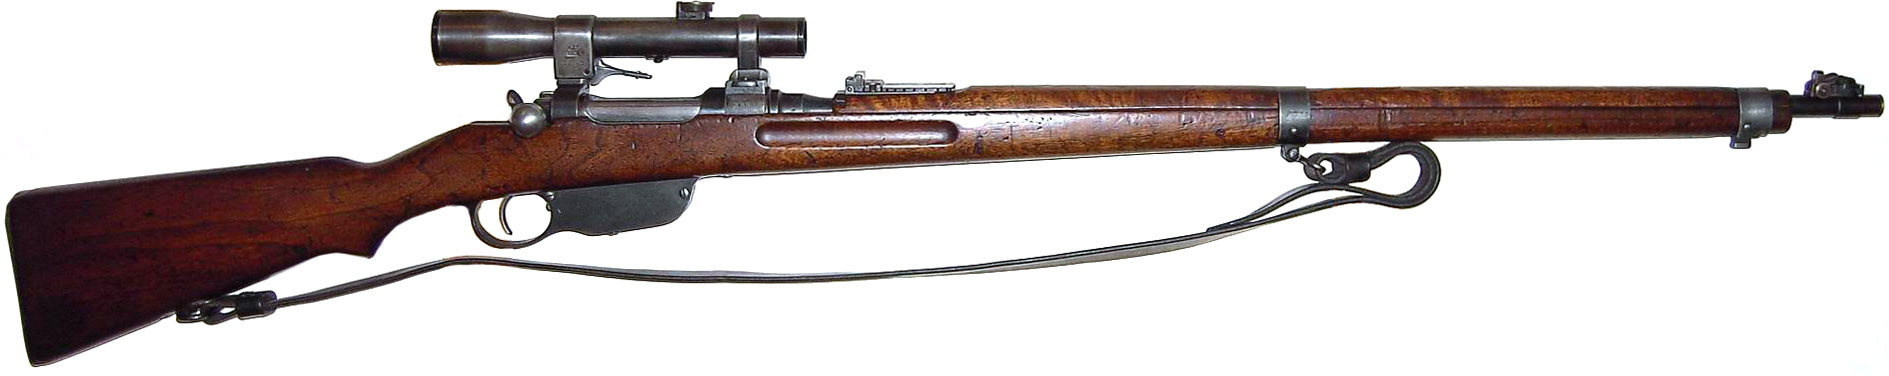 Mannlicher M1895)